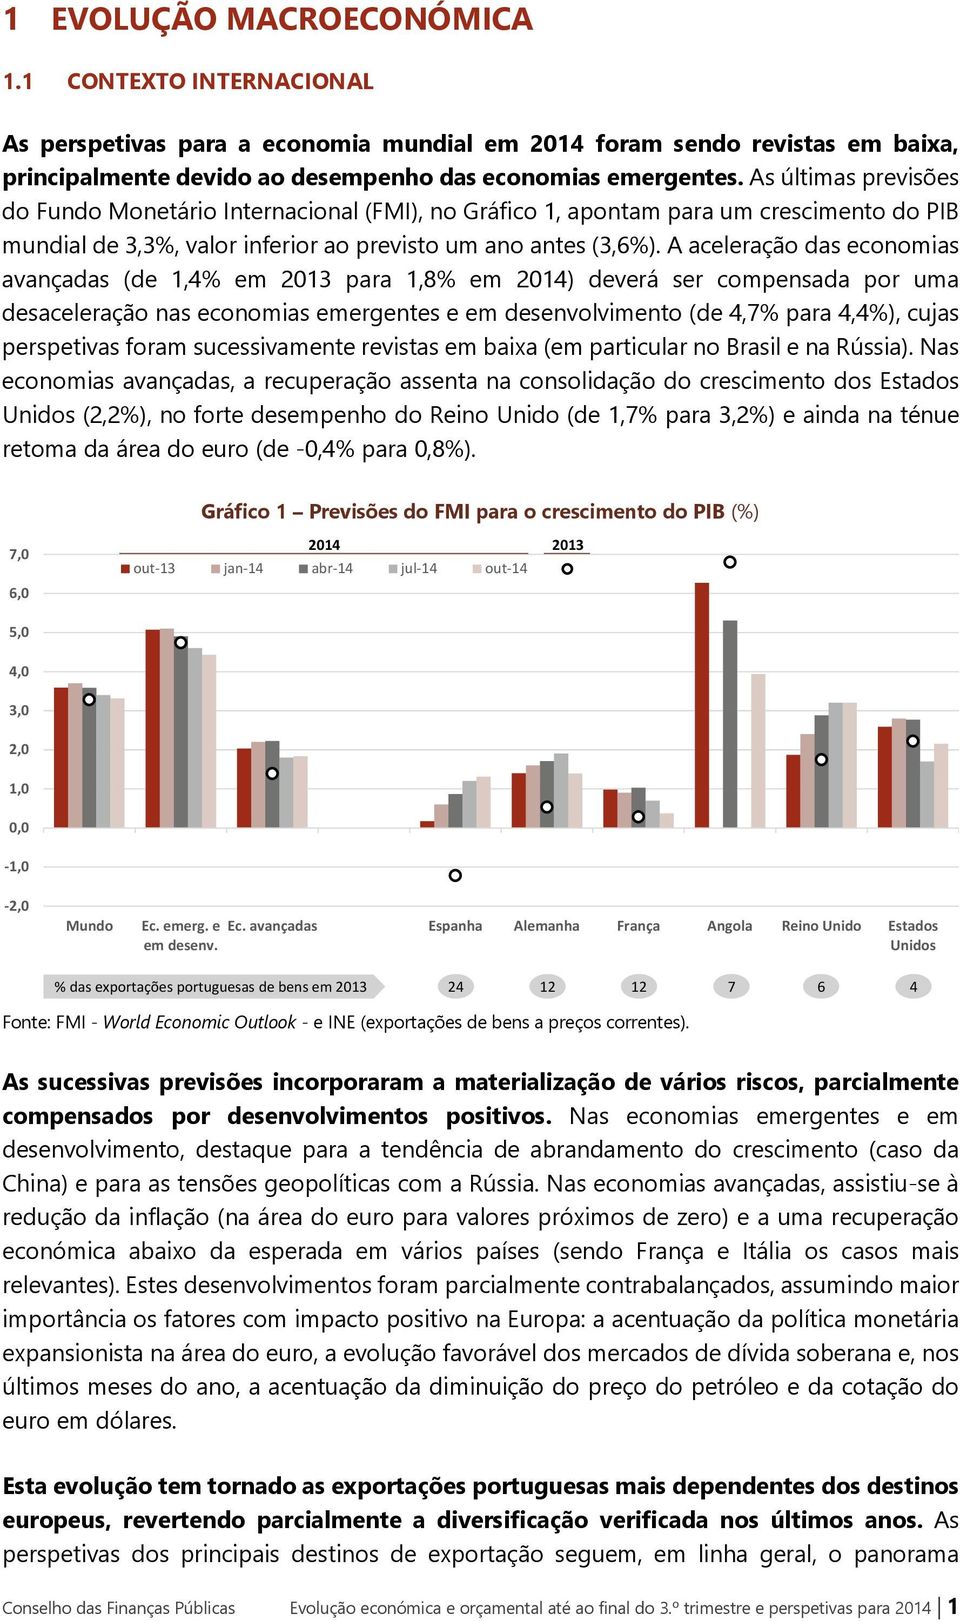 A aceleração das economias avançadas (de 1,4% em 2013 para 1,8% em 2014) deverá ser compensada por uma desaceleração nas economias emergentes e em desenvolvimento (de 4,7% para 4,4%), cujas